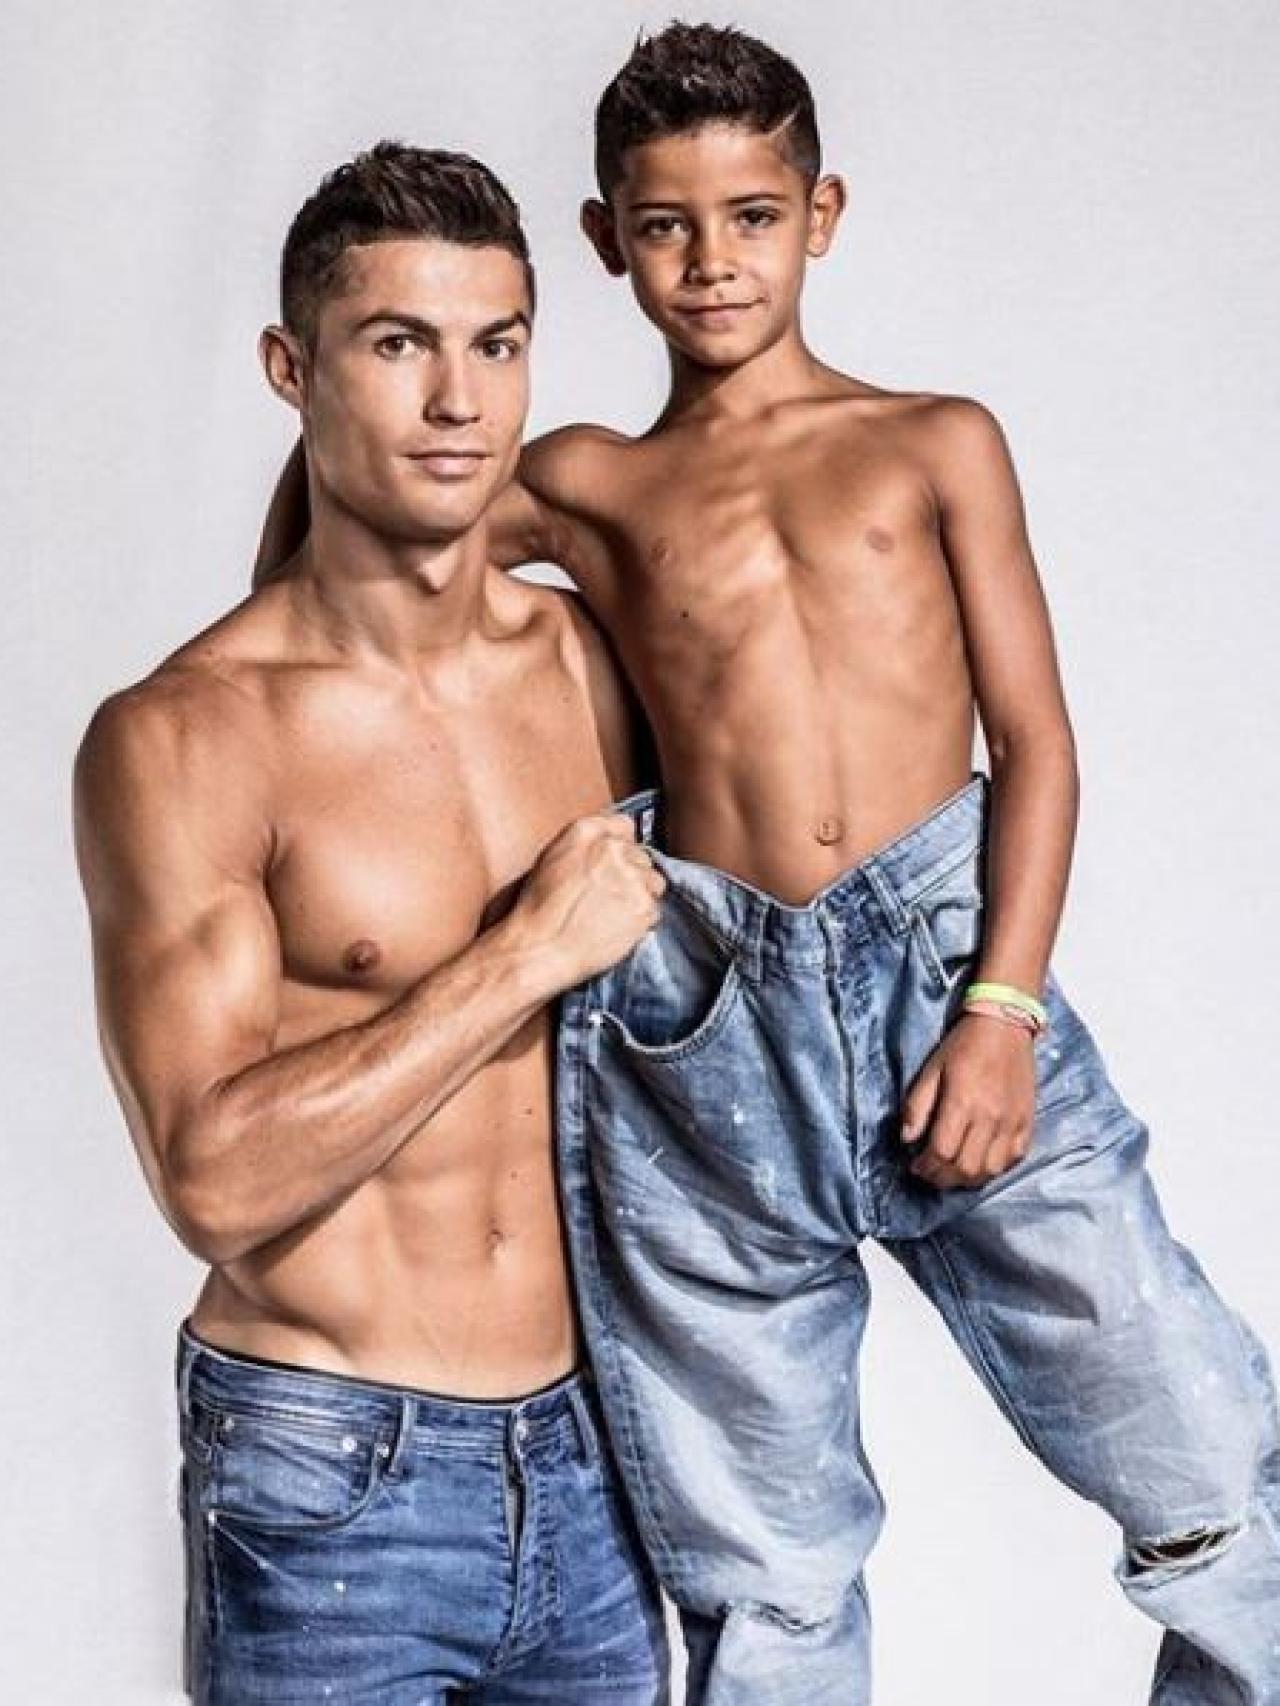 Los musculitos de Cristiano Ronaldo Jr. le pasarán factura: tendrá